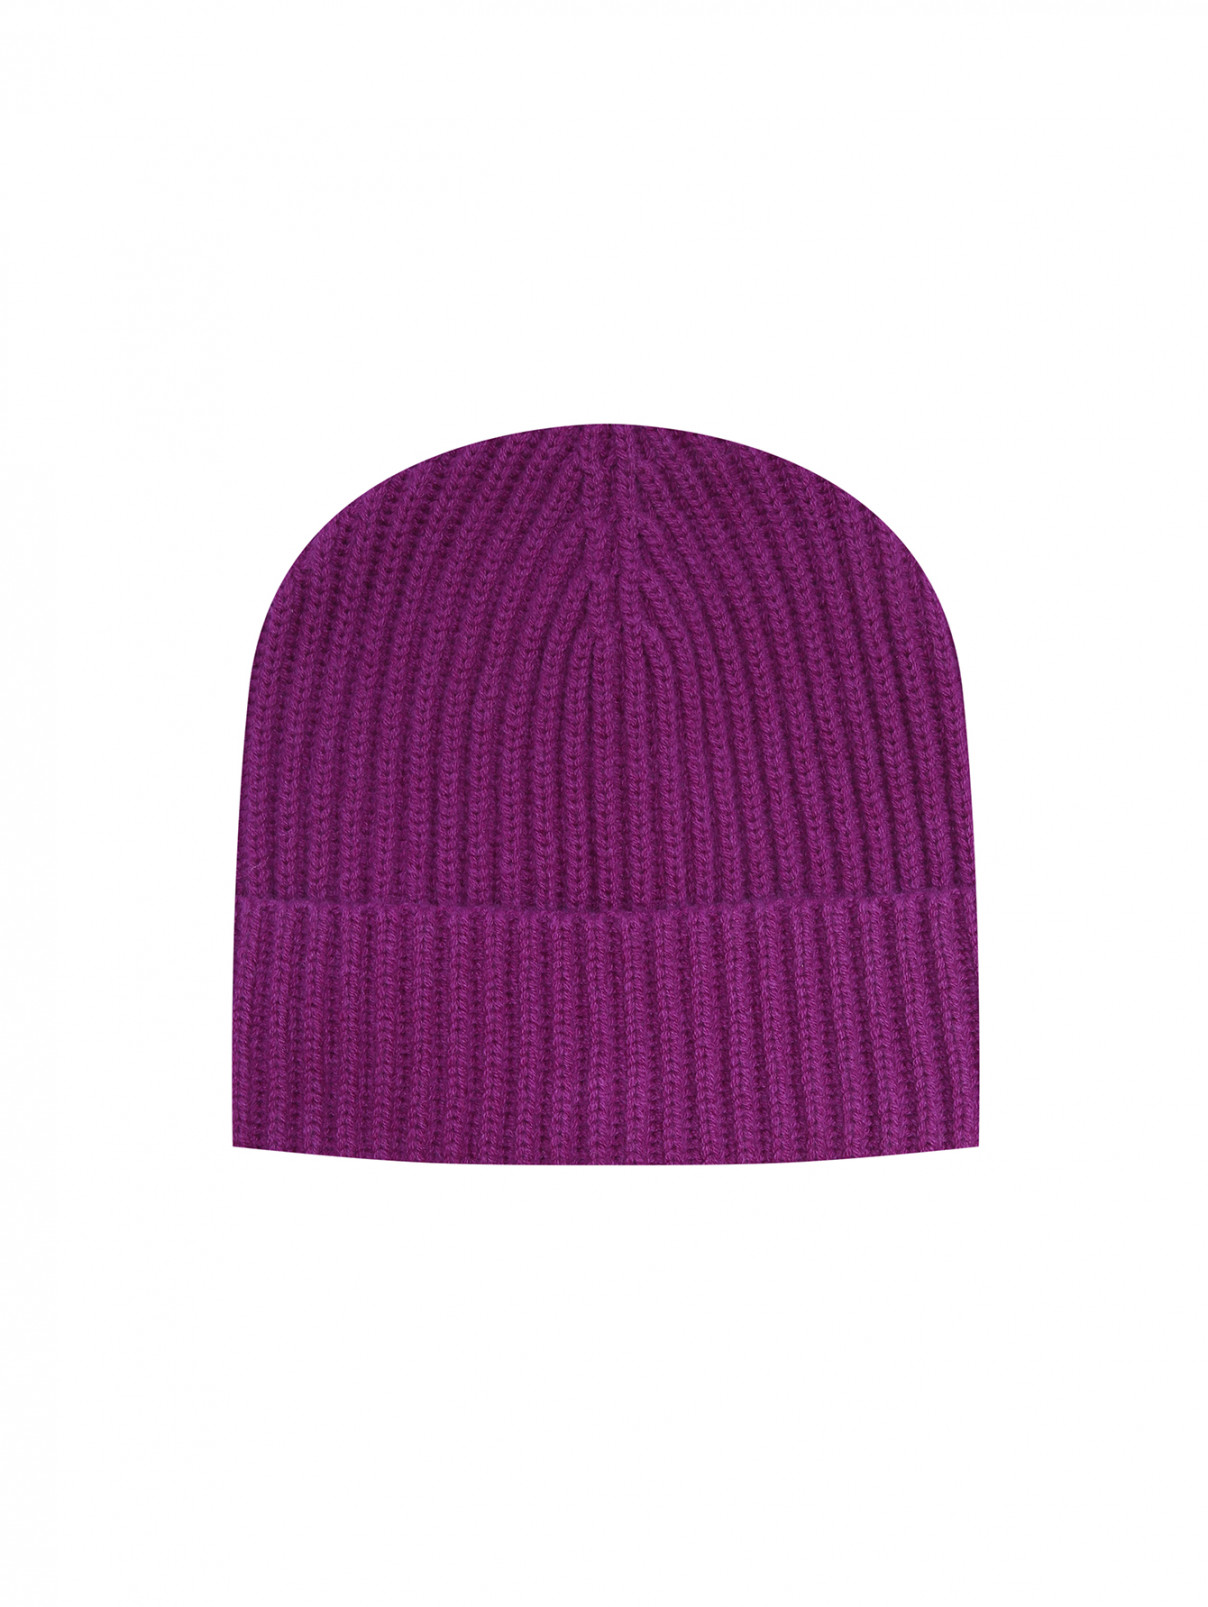 Однотонная шапка из шерсти и кашемира Dorothee Schumacher  –  Общий вид  – Цвет:  Фиолетовый